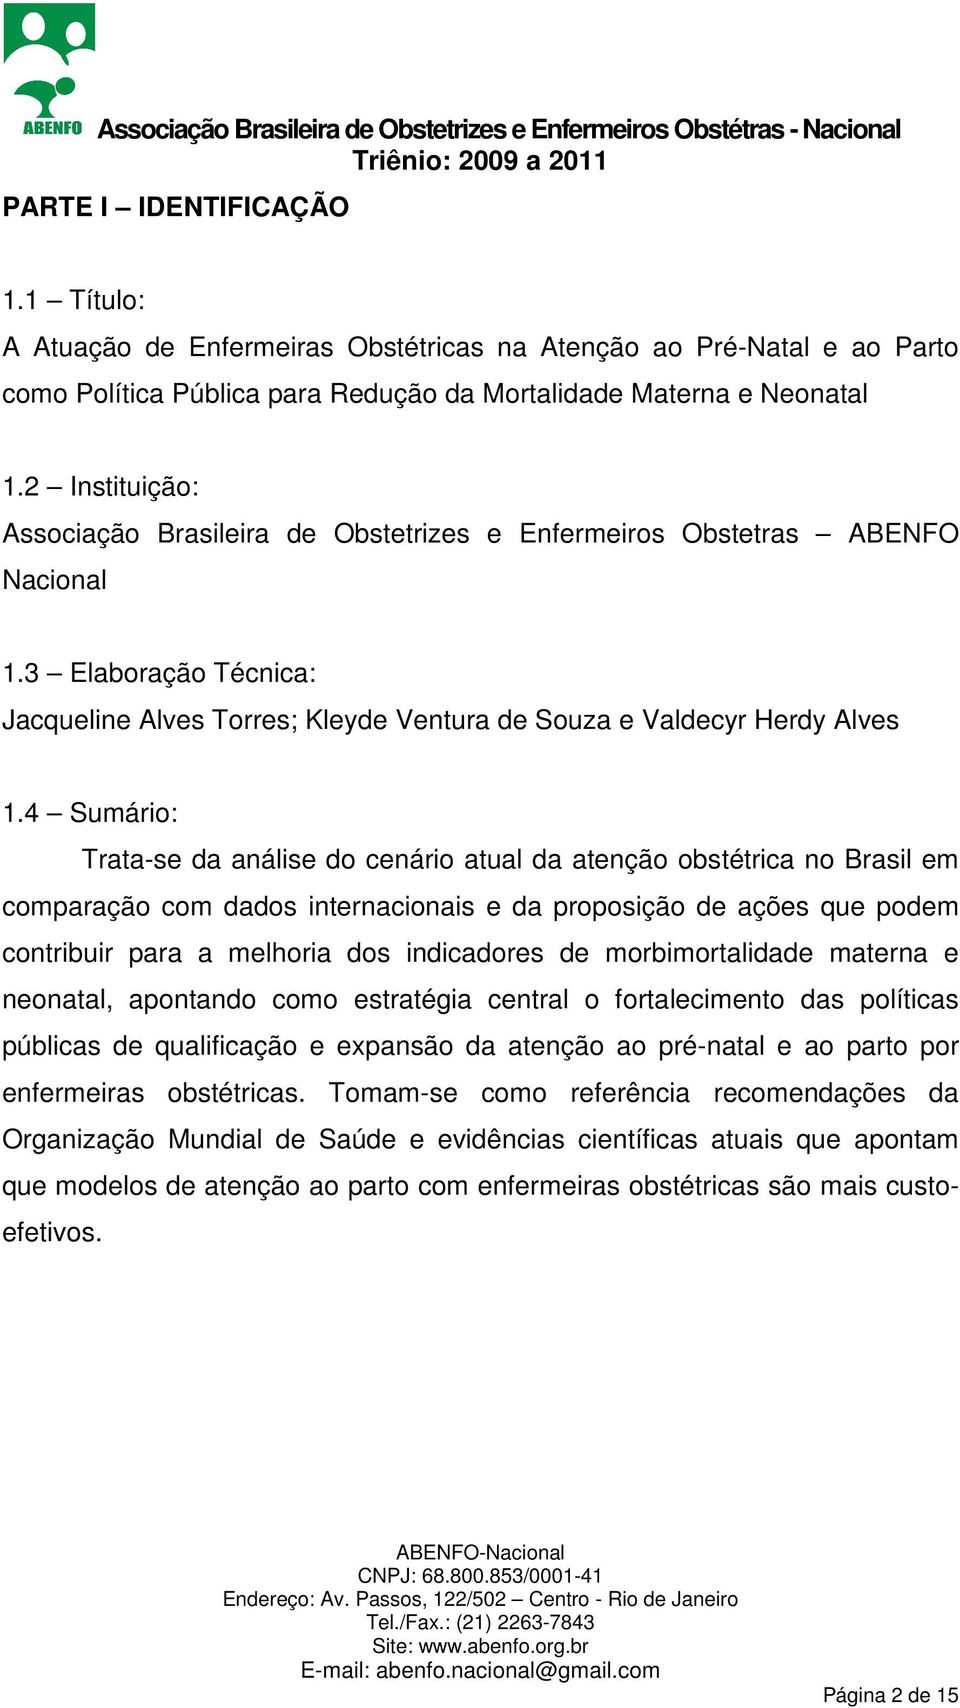 4 Sumário: Trata-se da análise do cenário atual da atenção obstétrica no Brasil em comparação com dados internacionais e da proposição de ações que podem contribuir para a melhoria dos indicadores de